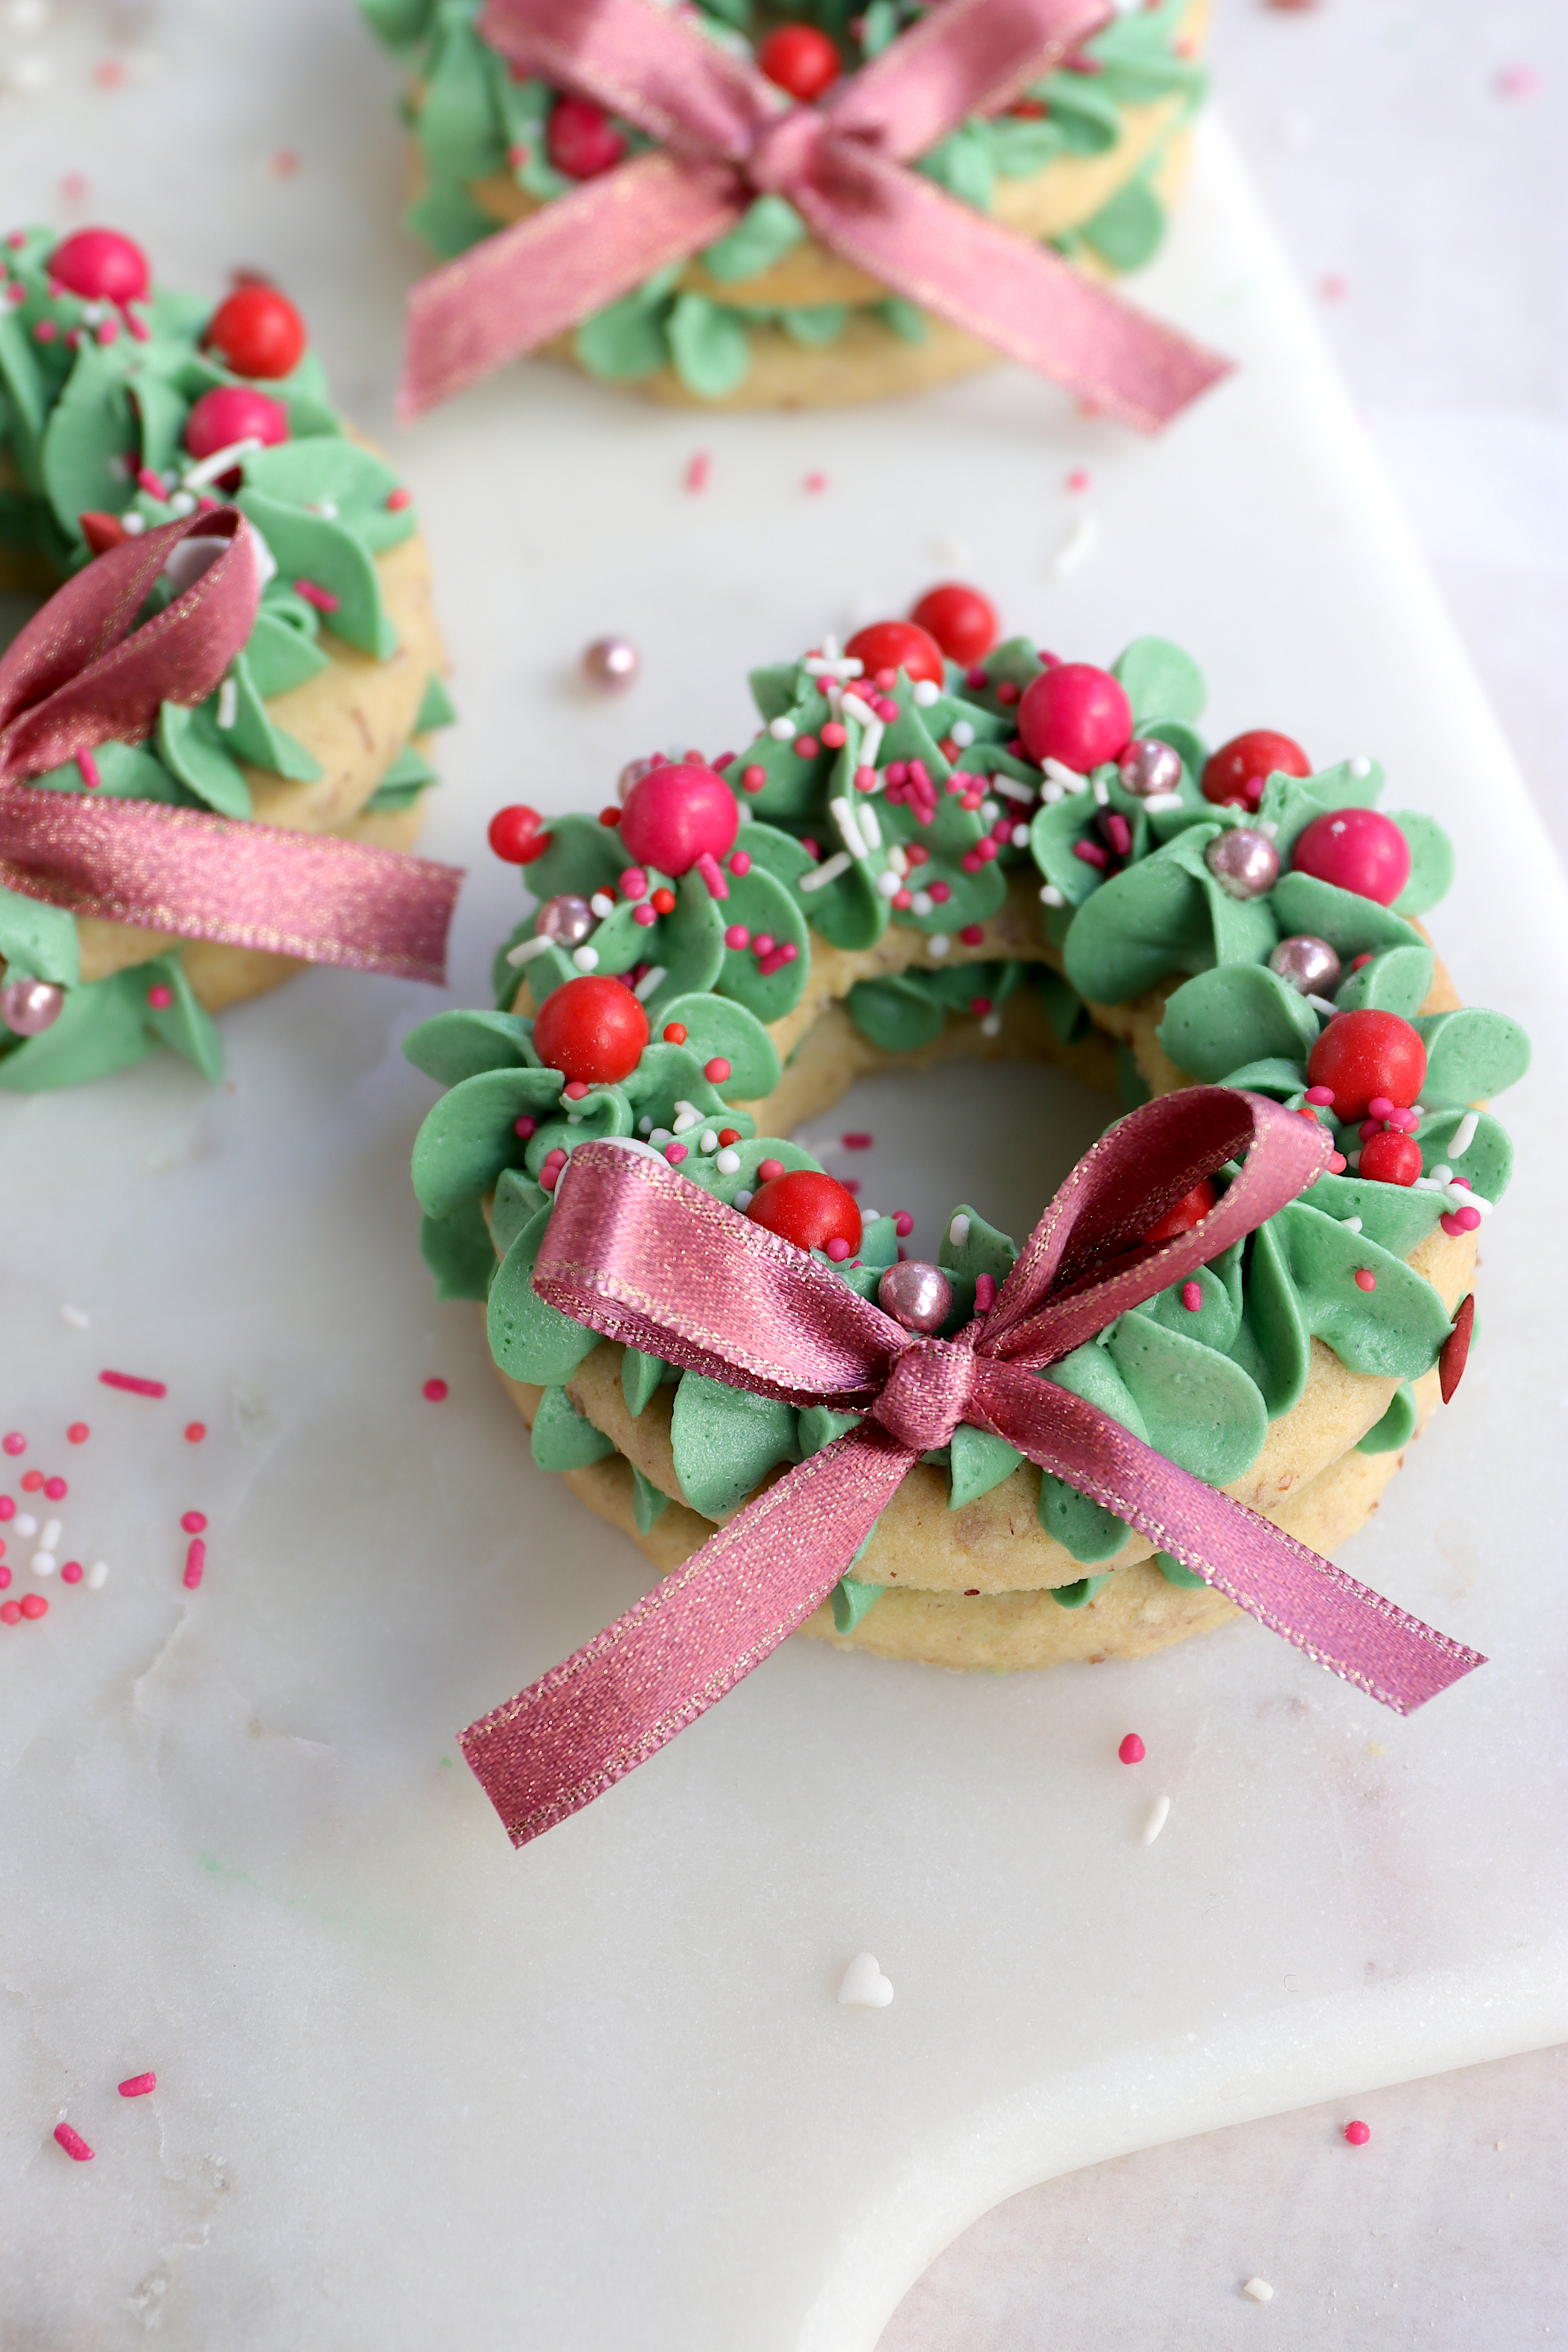 Kekse backen zu Weihnachten als Christbaum